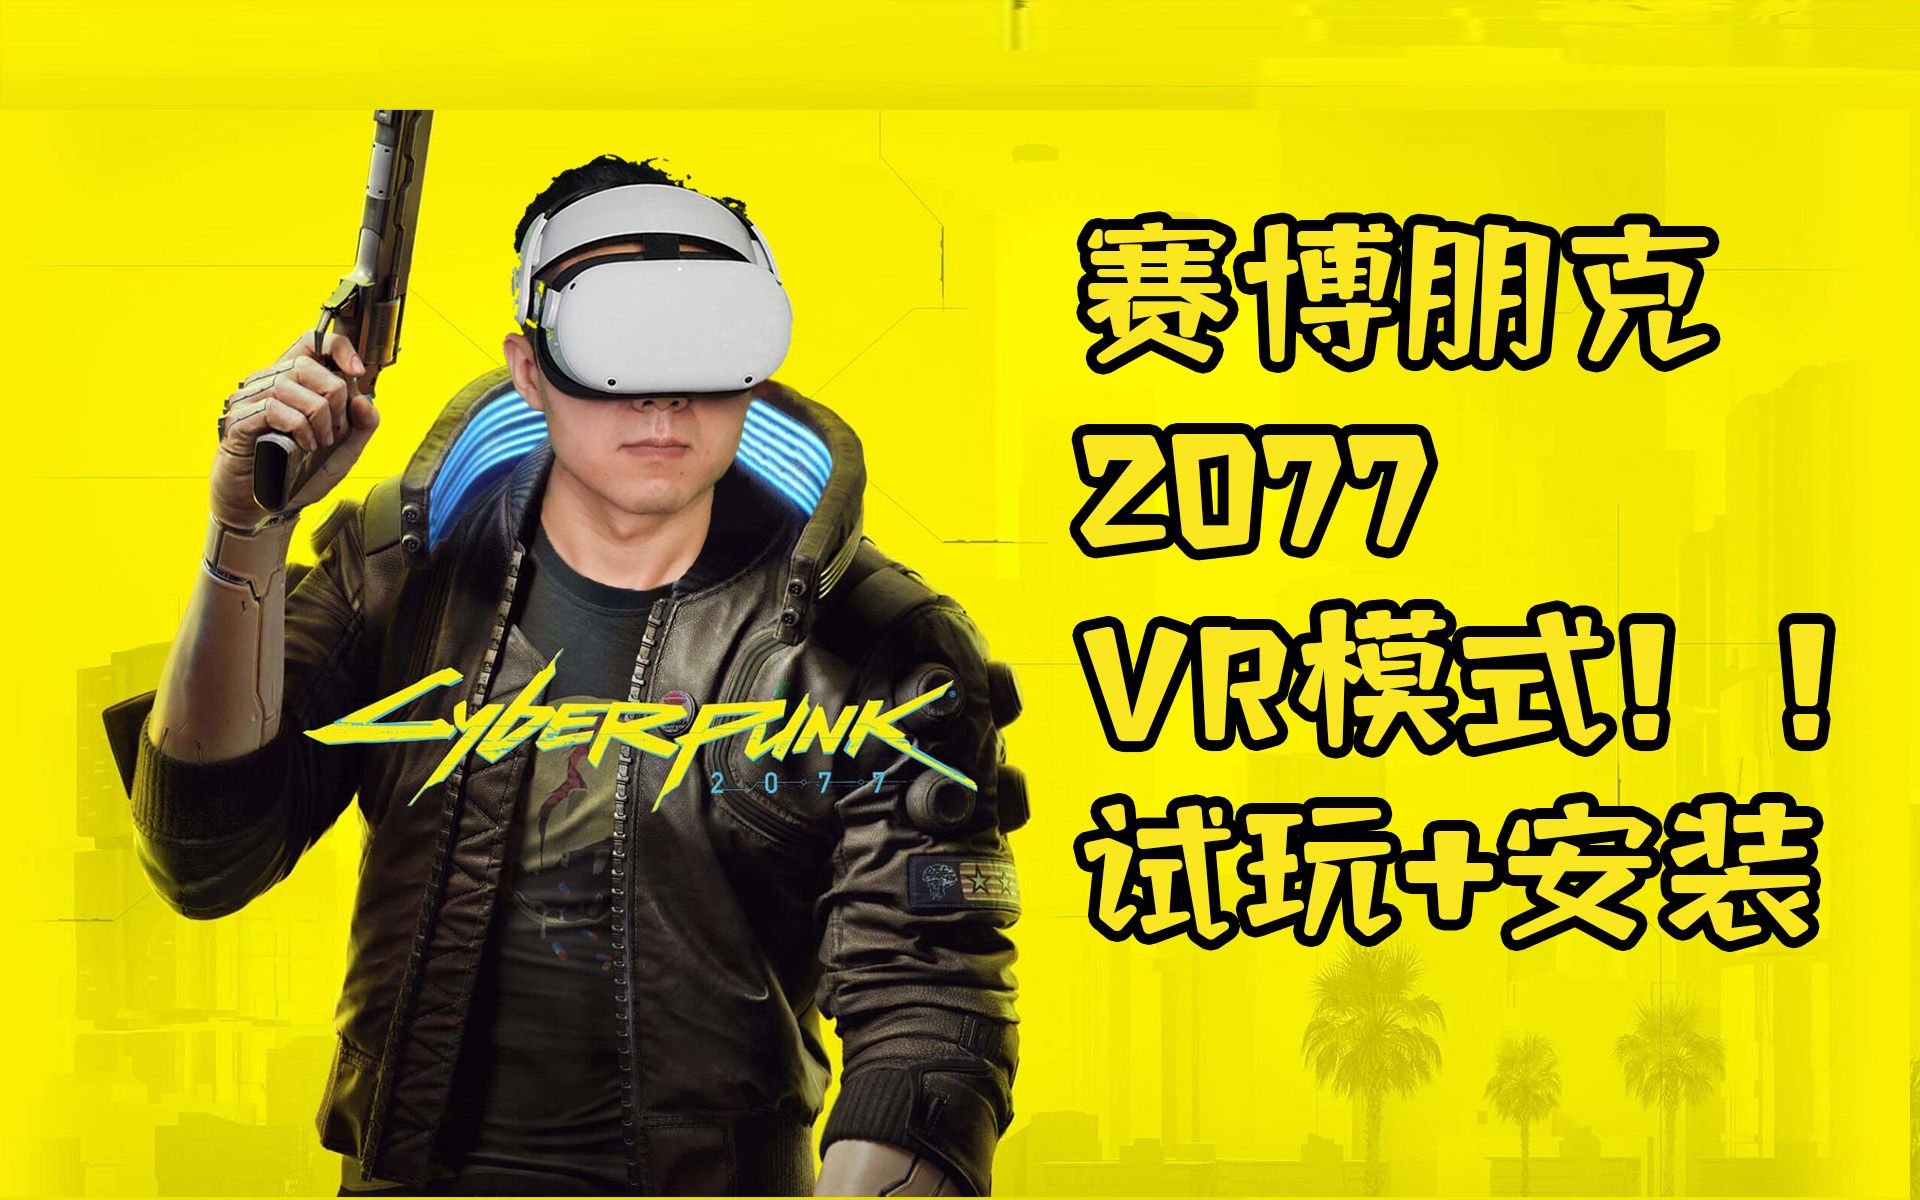 赛博朋克2077终于有VR模式了！试玩&安装方法介绍